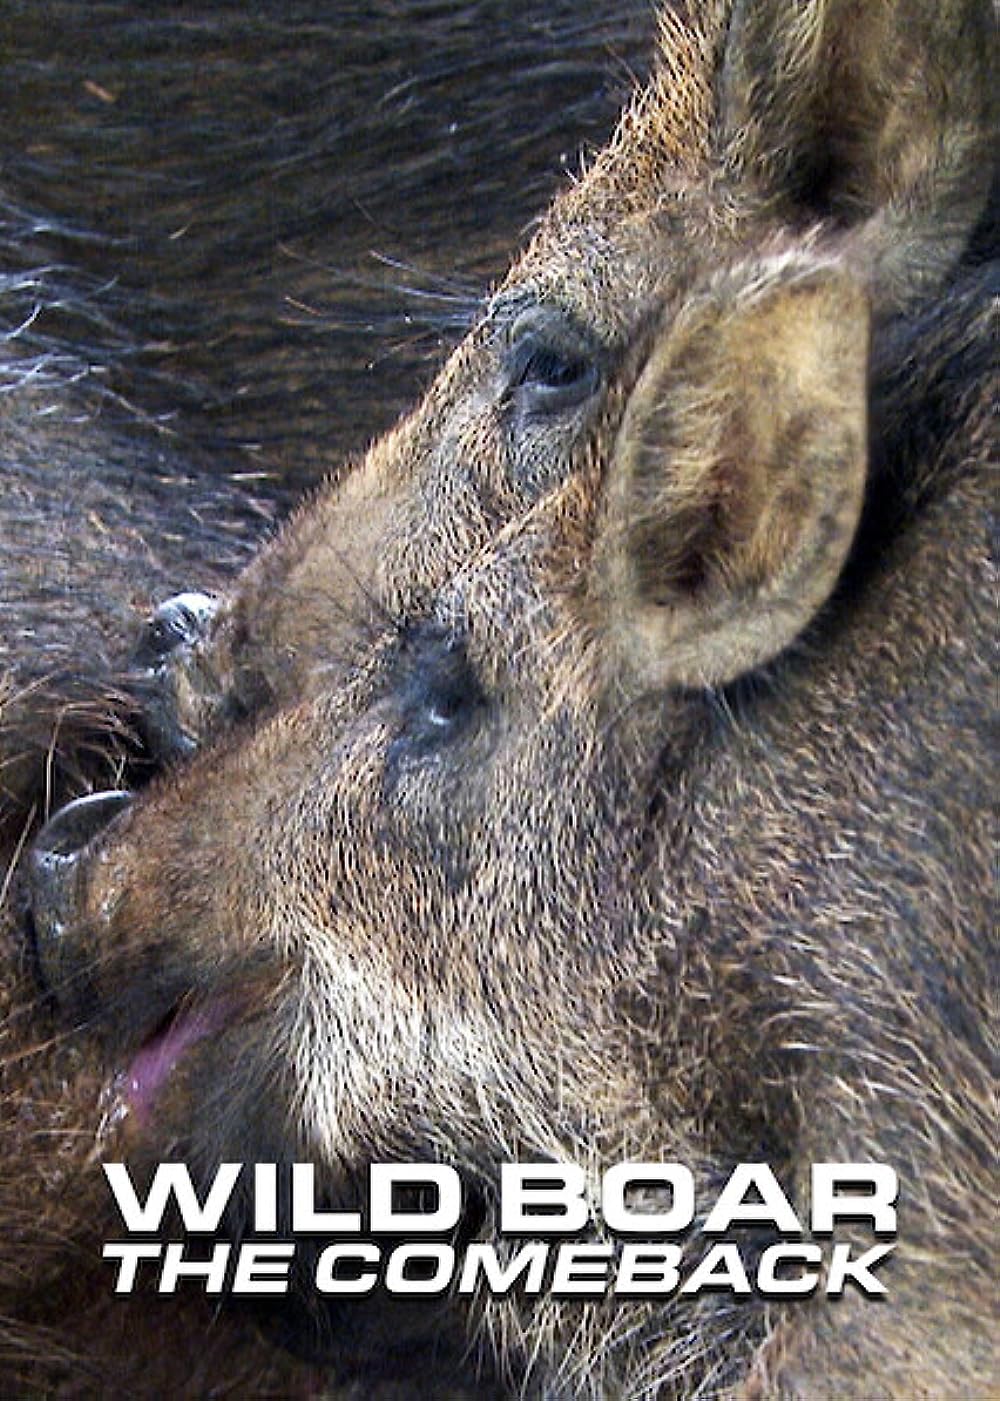     Wild Boar - The Comeback